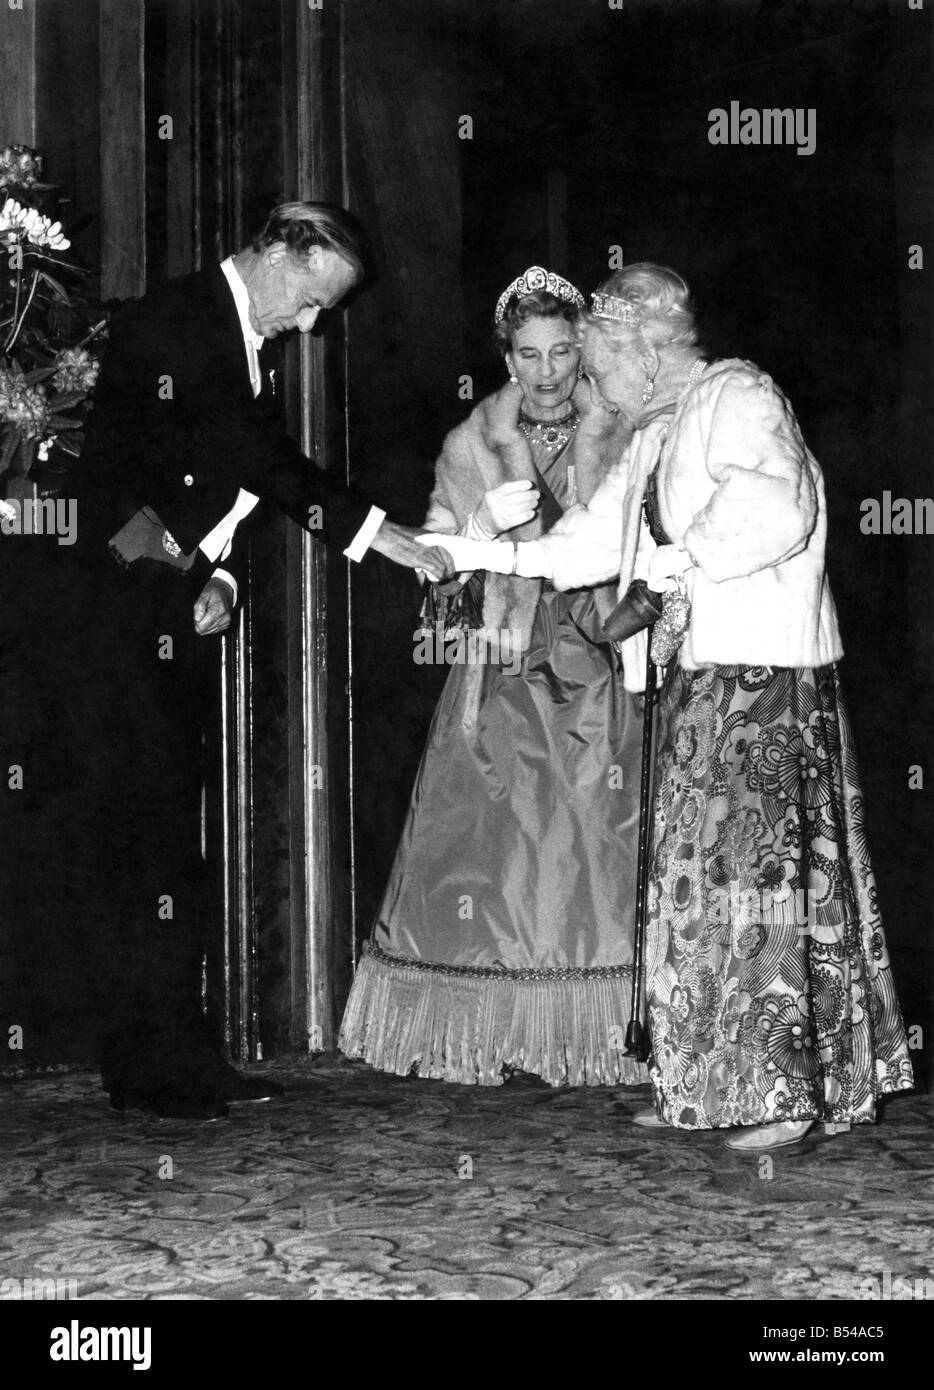 Am Montag, 30. Mai 1977 besuchte die Queen und Prinz Phillip, begleitet von anderen Mitgliedern der königlichen Familie, ein silbernes Jubiläum Gala-Vorstellung am Royal Opera House, Covent Garden, wo sie Auszüge aus Oper und Ballett sahen. Prinzessin Alice St. Glouceter (links) und Prinzessin Alice, Courtess St. Athlone. Mai 1977 P016908 Stockfoto